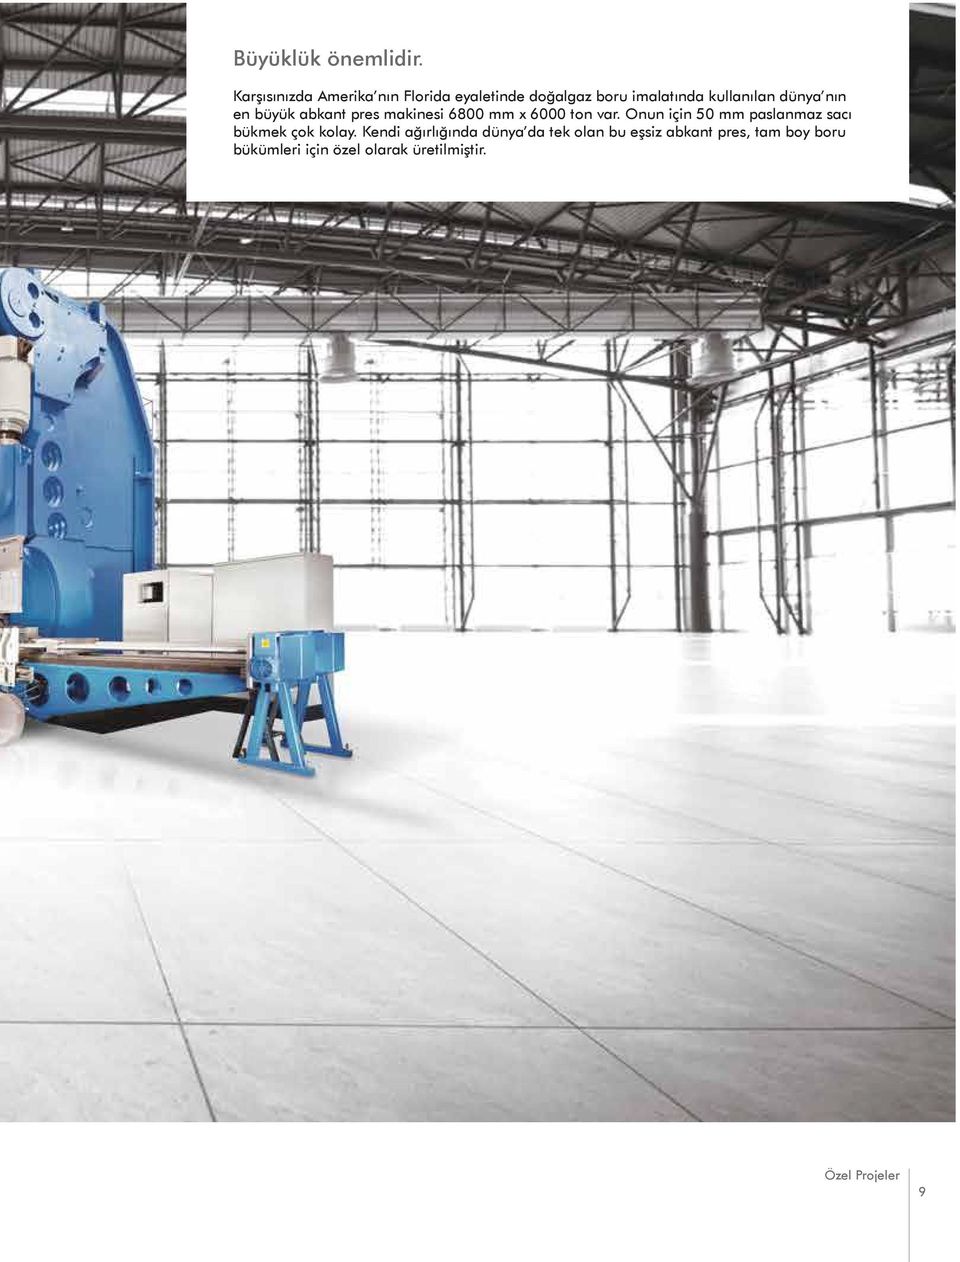 dünya nın en büyük abkant pres makinesi 6800 mm x 6000 ton var.